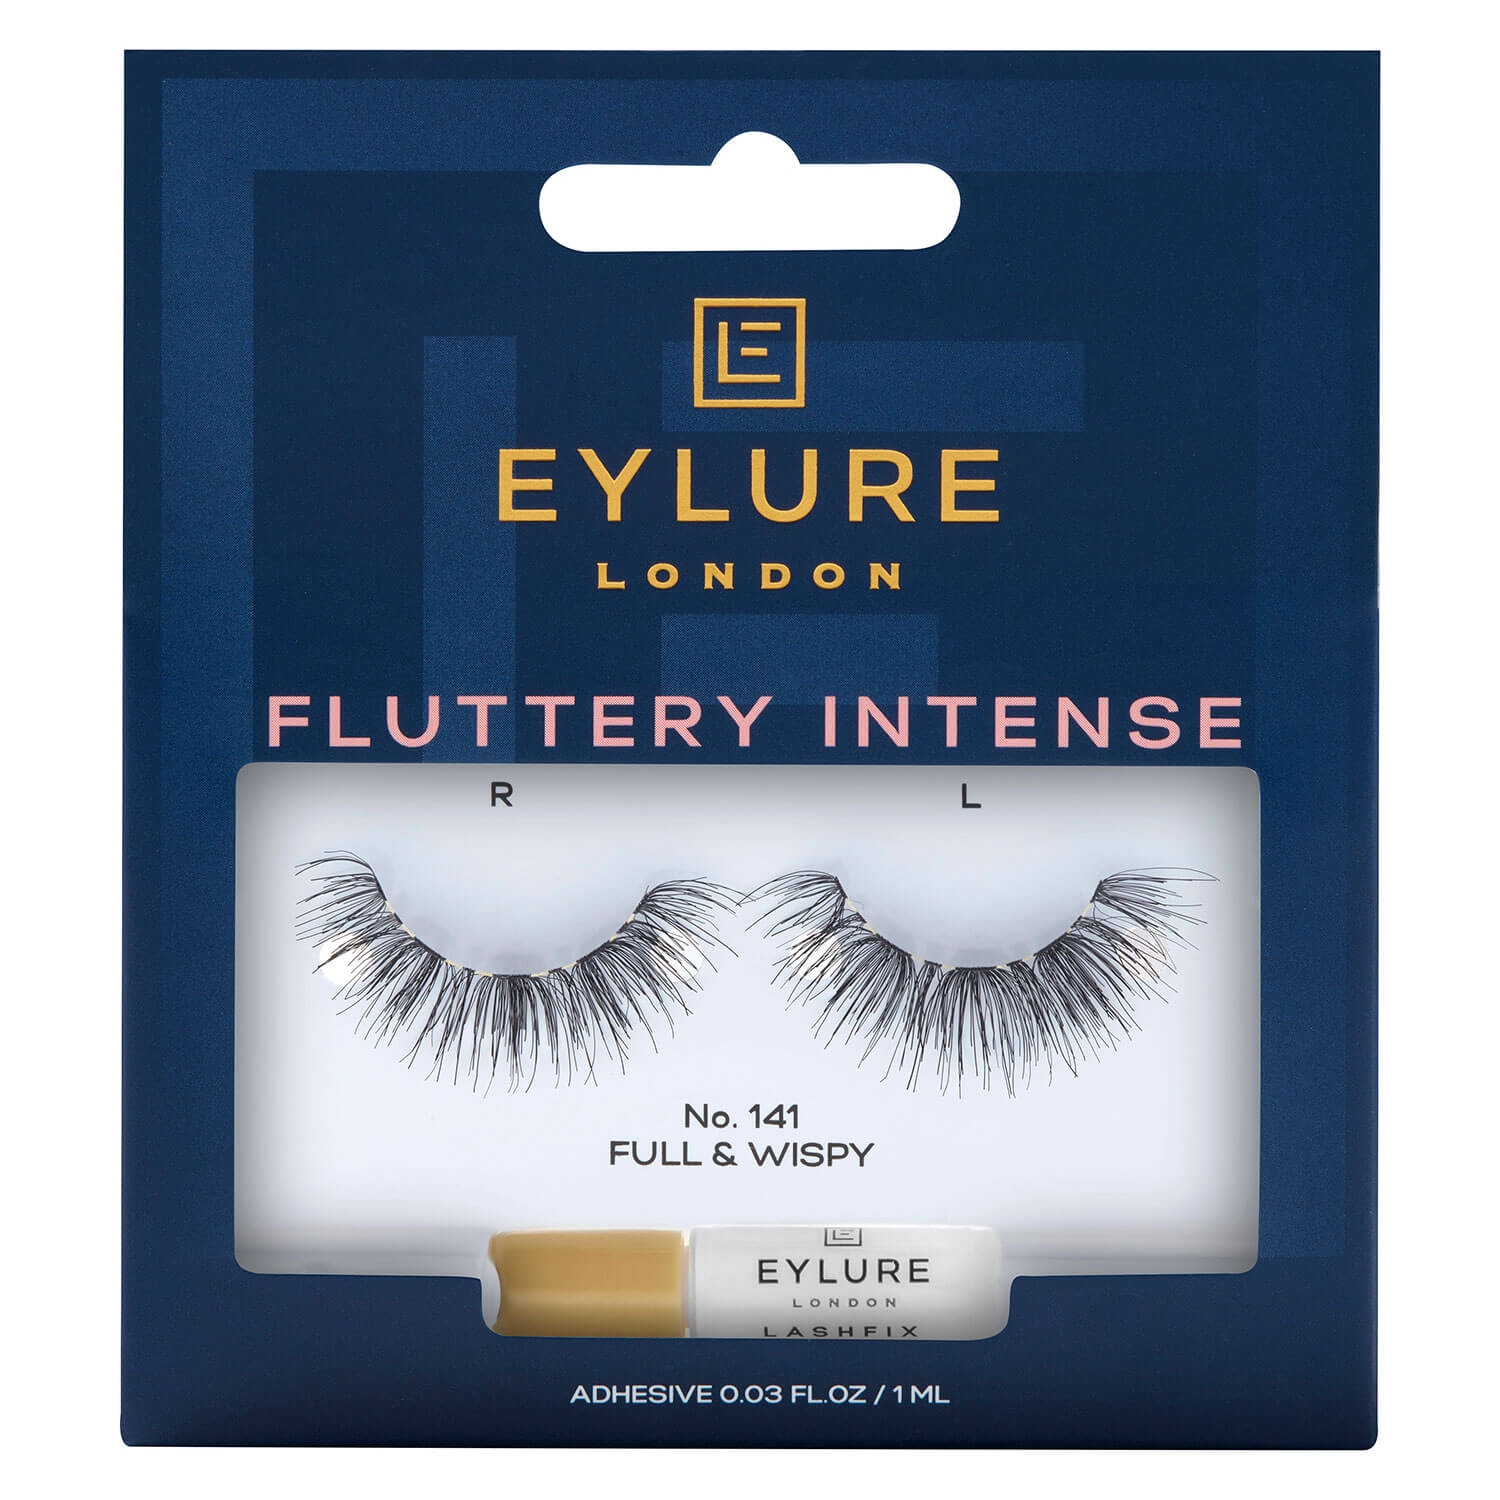 Produktbild von EYLURE - Wimpern Fluttery Intense 141